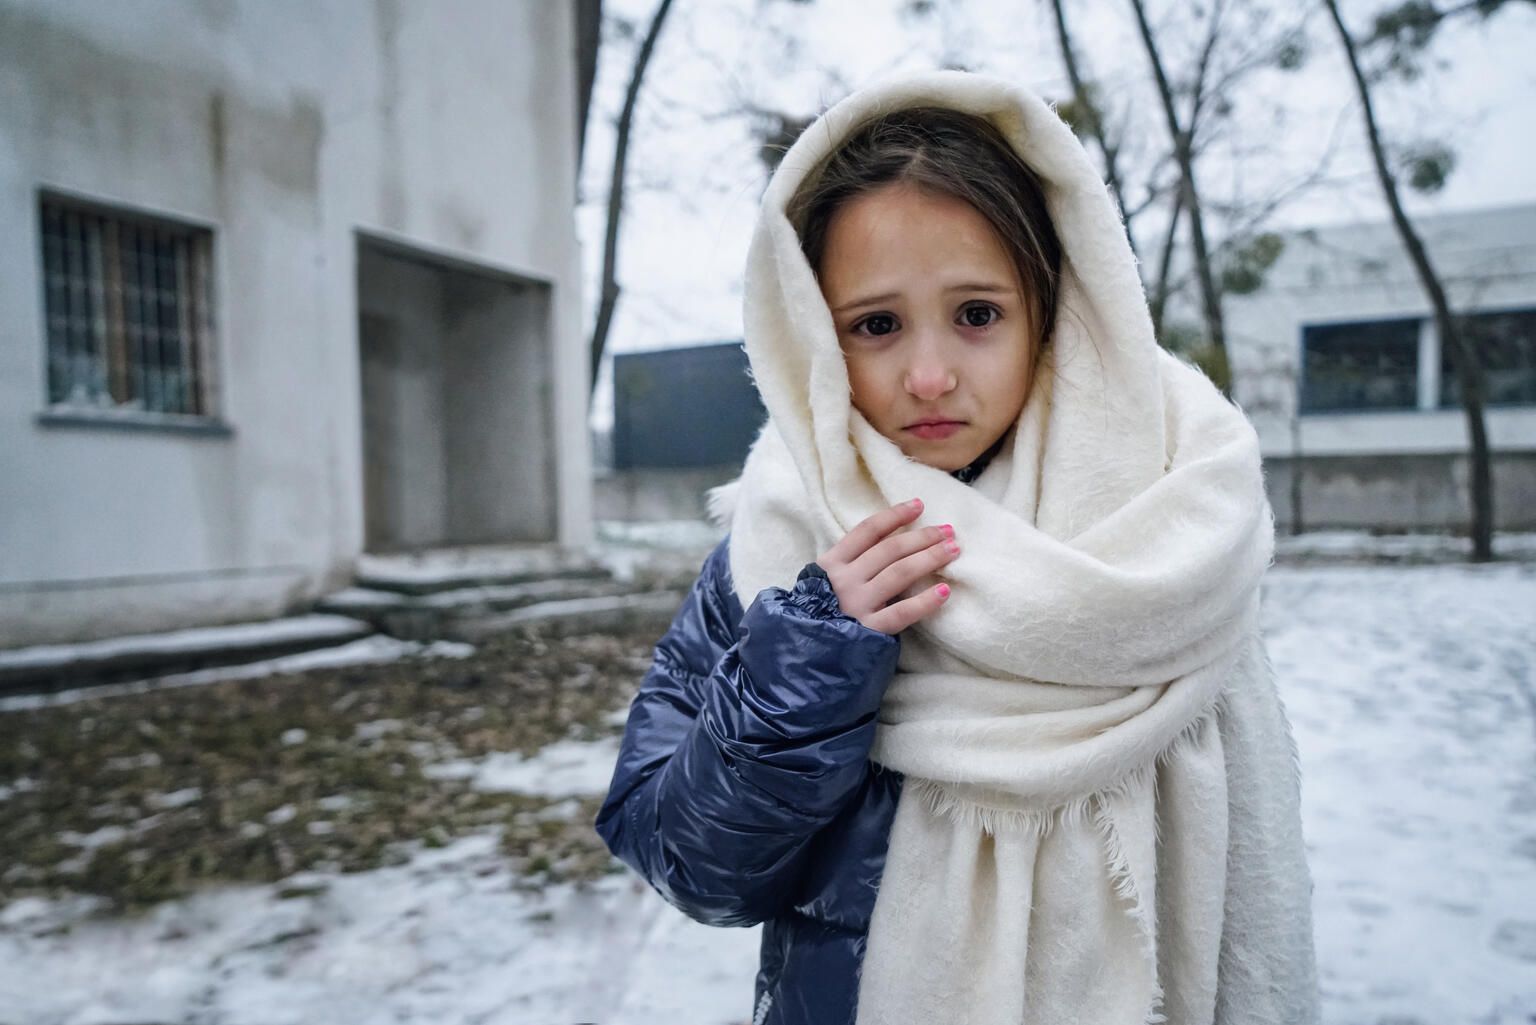 8-летняя Ева в городе Ирпень недалеко от Киева. Ева живет с семьей в модульном городке после того, как во время боев за Ирпень был полностью разрушен их дом. Сейчас Ева делит комнату в 10 квадратных метров со своей мамой Тамарой и старшей сестрой Софией. Киевская область, 21 декабря 2022 года.